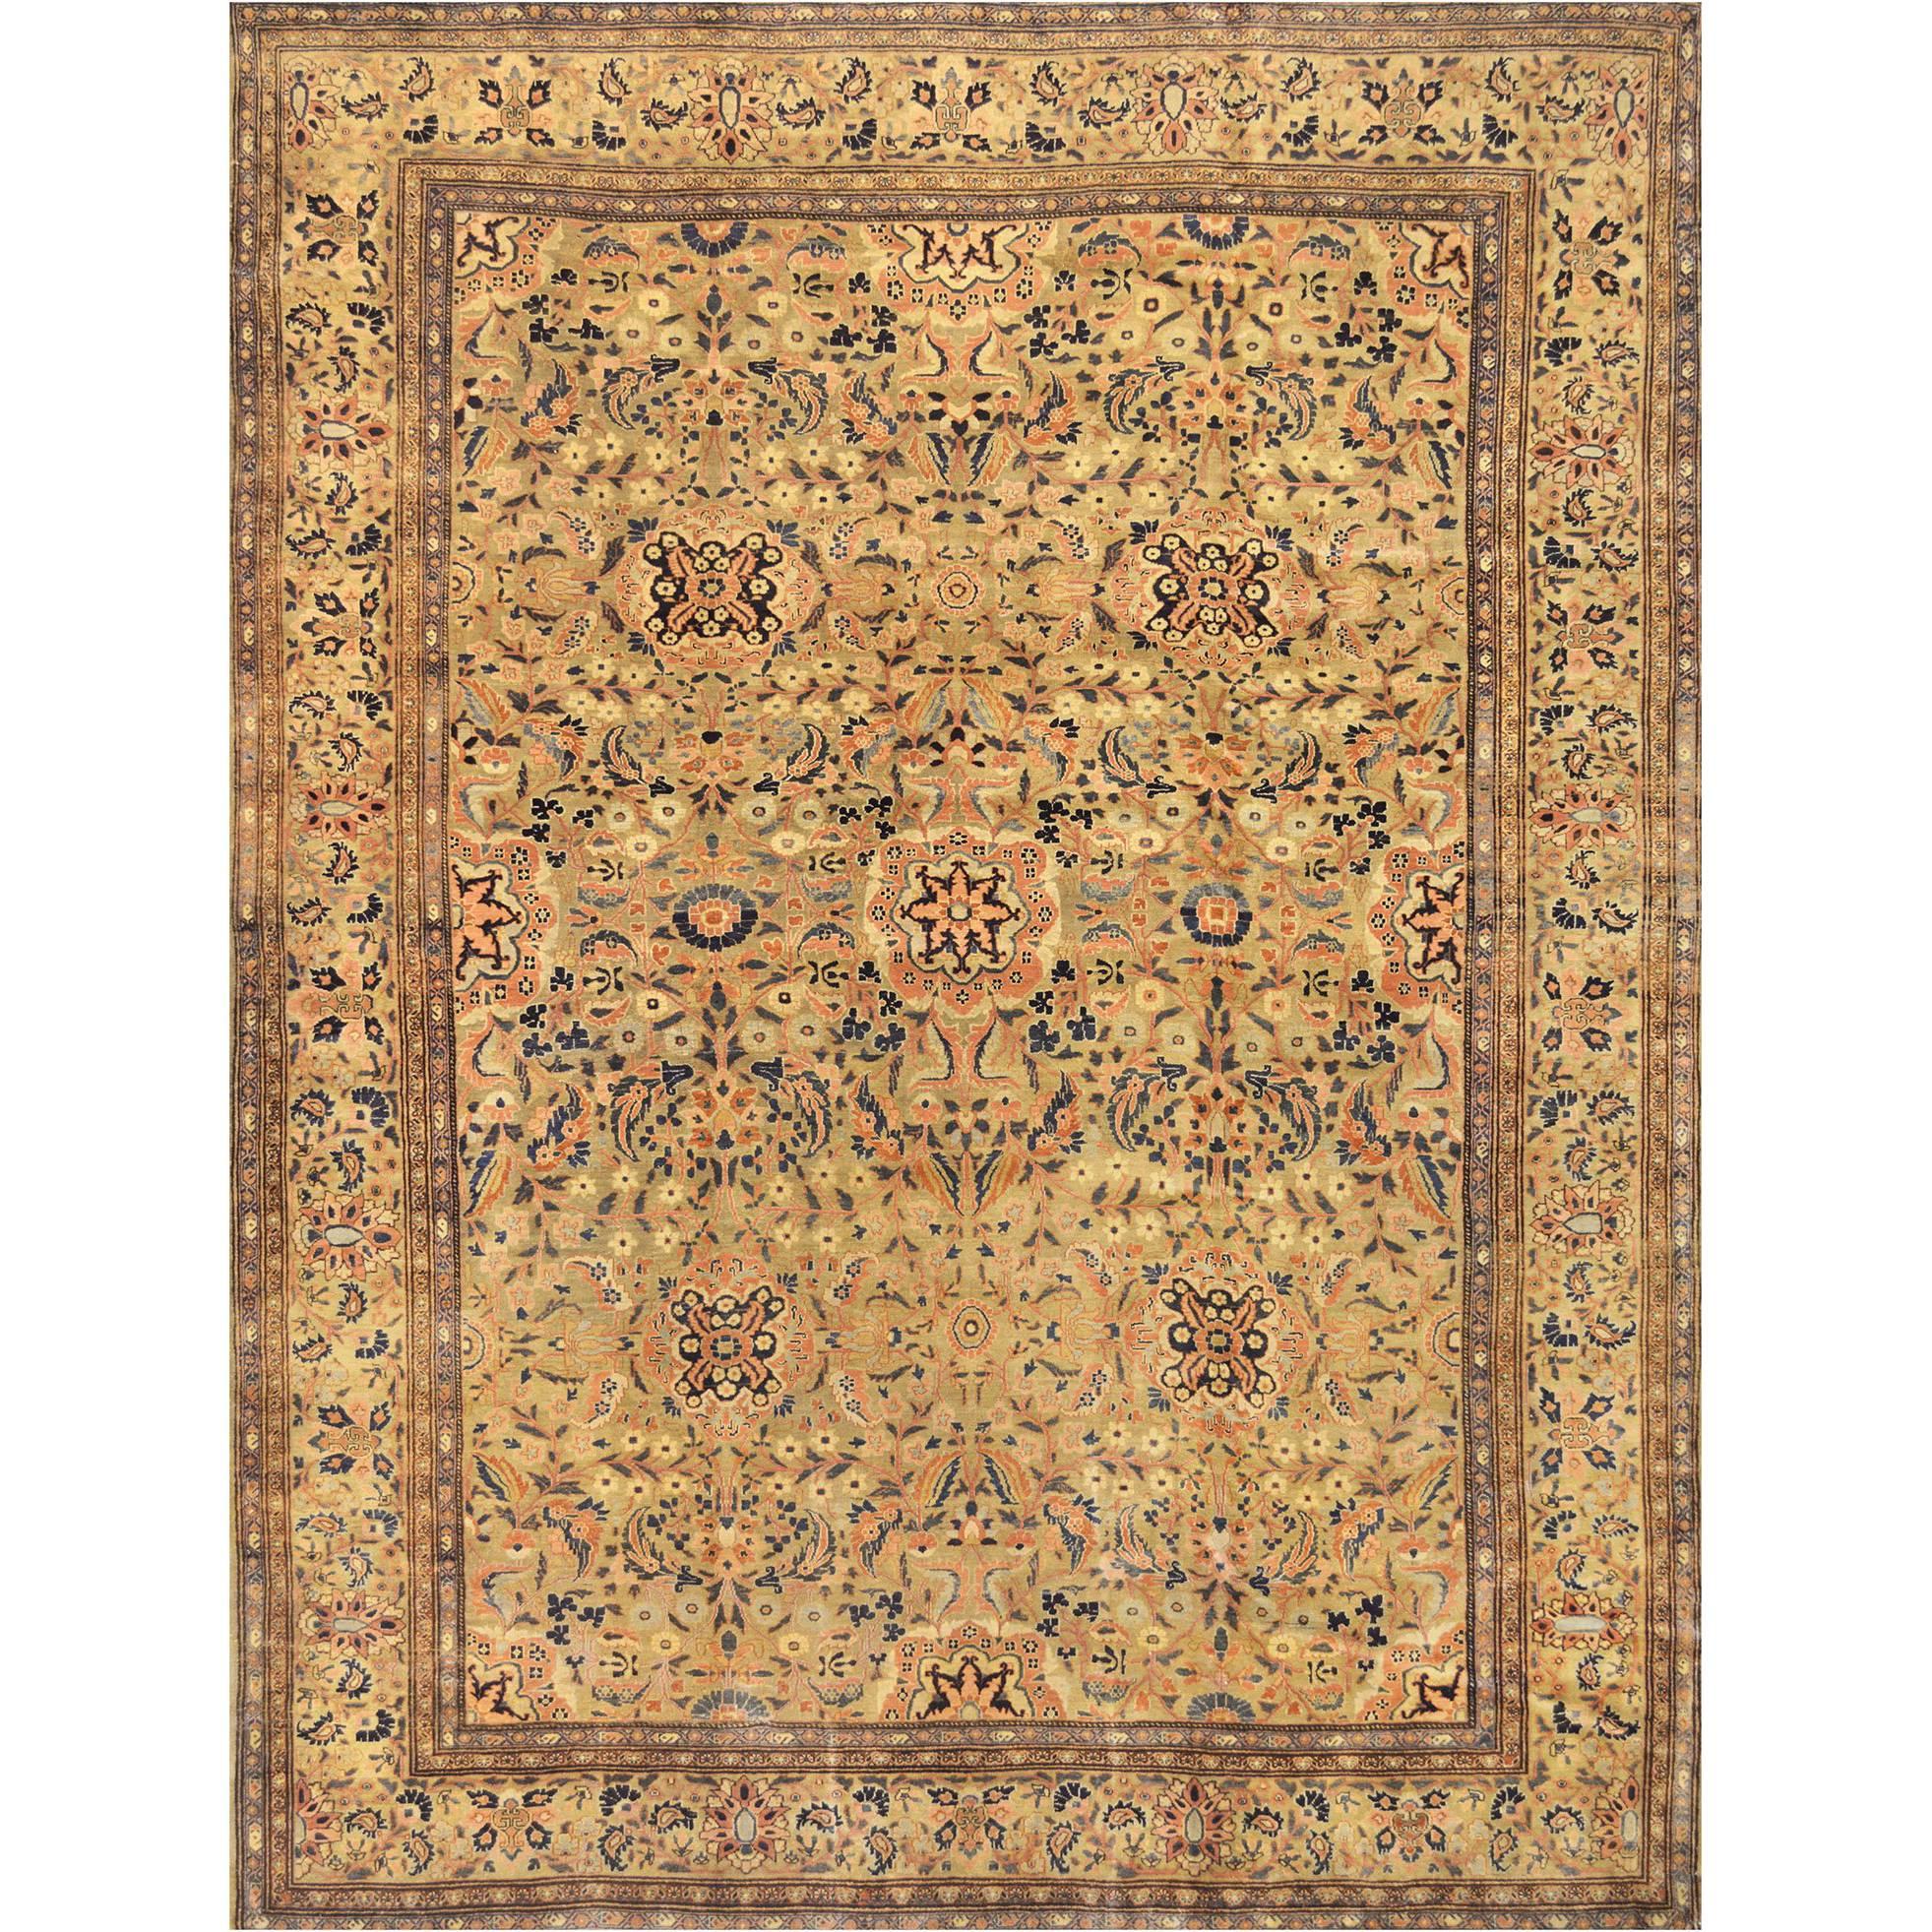 Fereghan-Teppich aus Westpersien aus dem späten 19. Jahrhundert